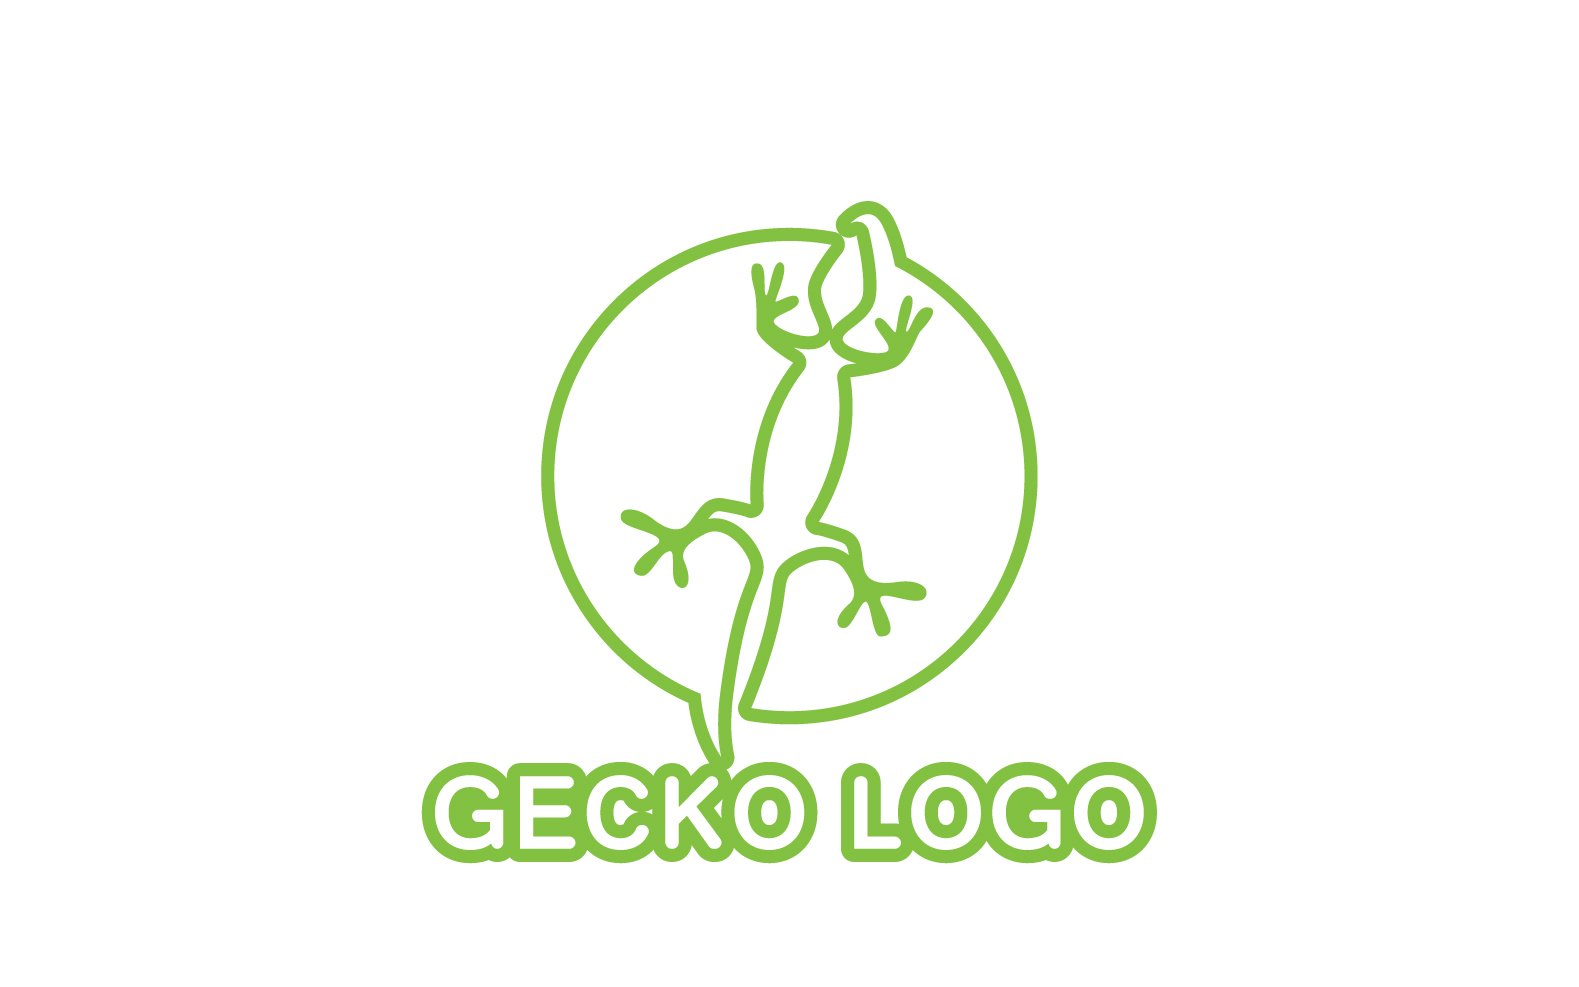 Kit Graphique #324528 Logo Gecko Divers Modles Web - Logo template Preview